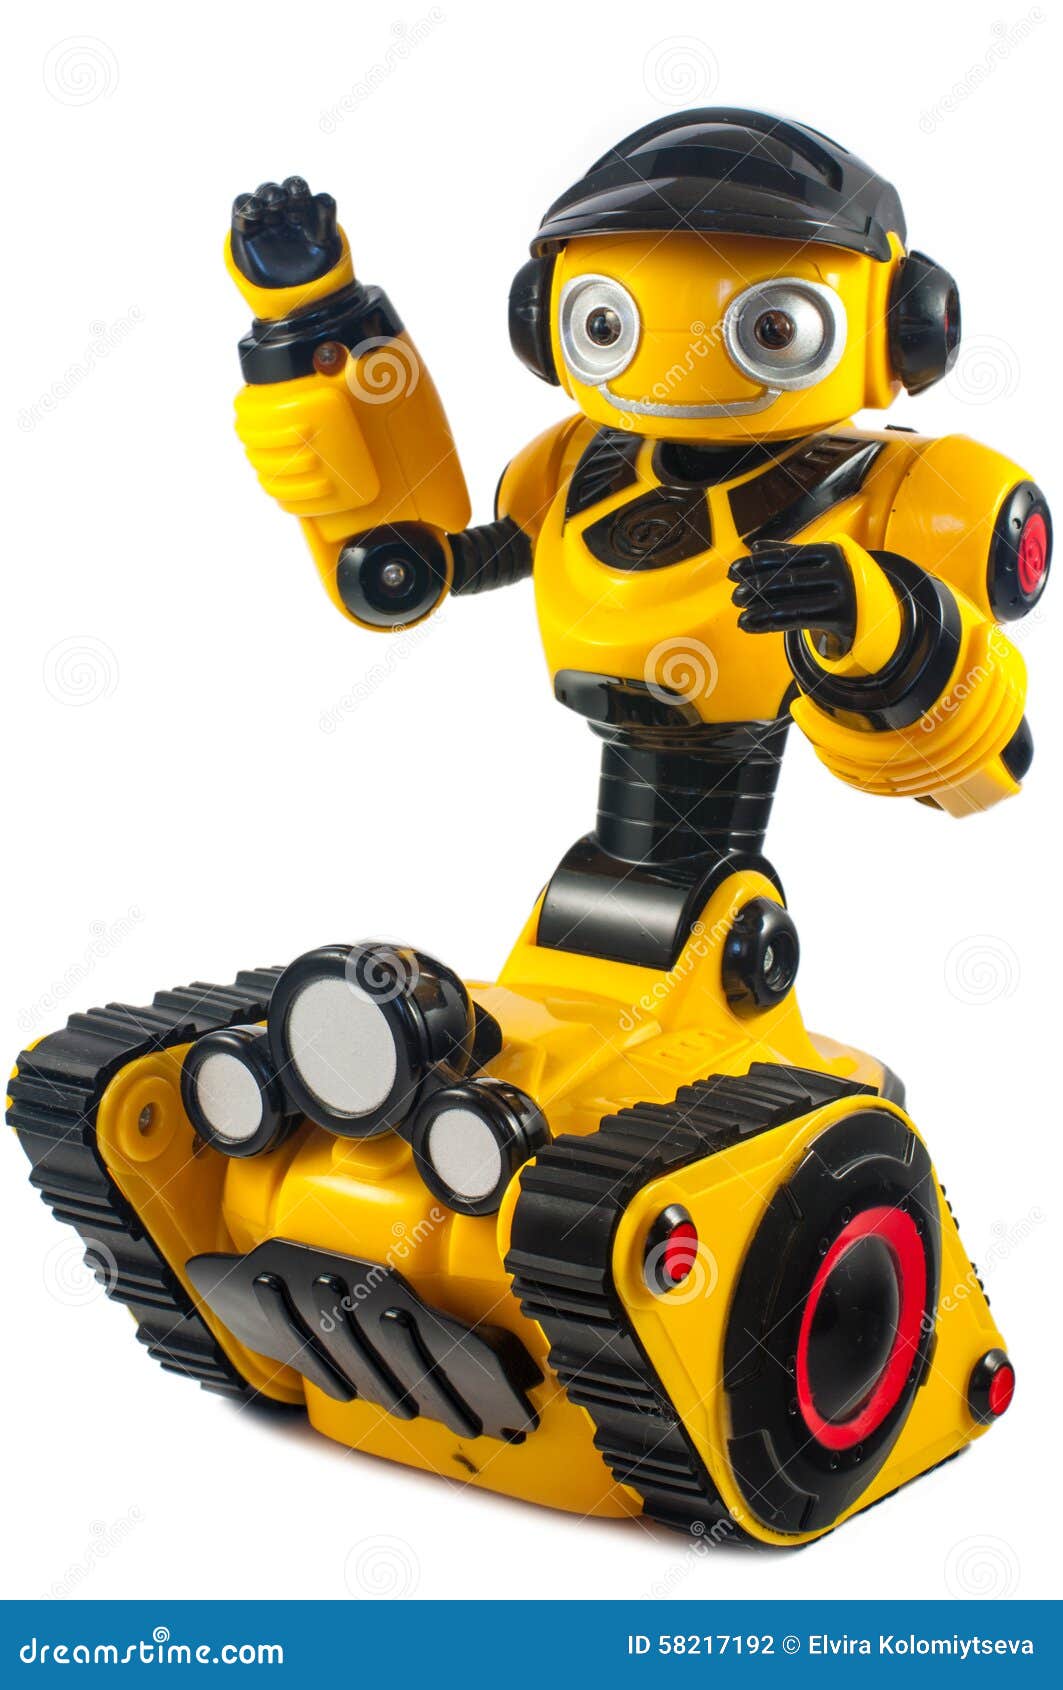 Малыш в желтом робот. Желтый робот. Жёлтый робот на гусеницах. Робот детский желтый. Детский робот на колесах.